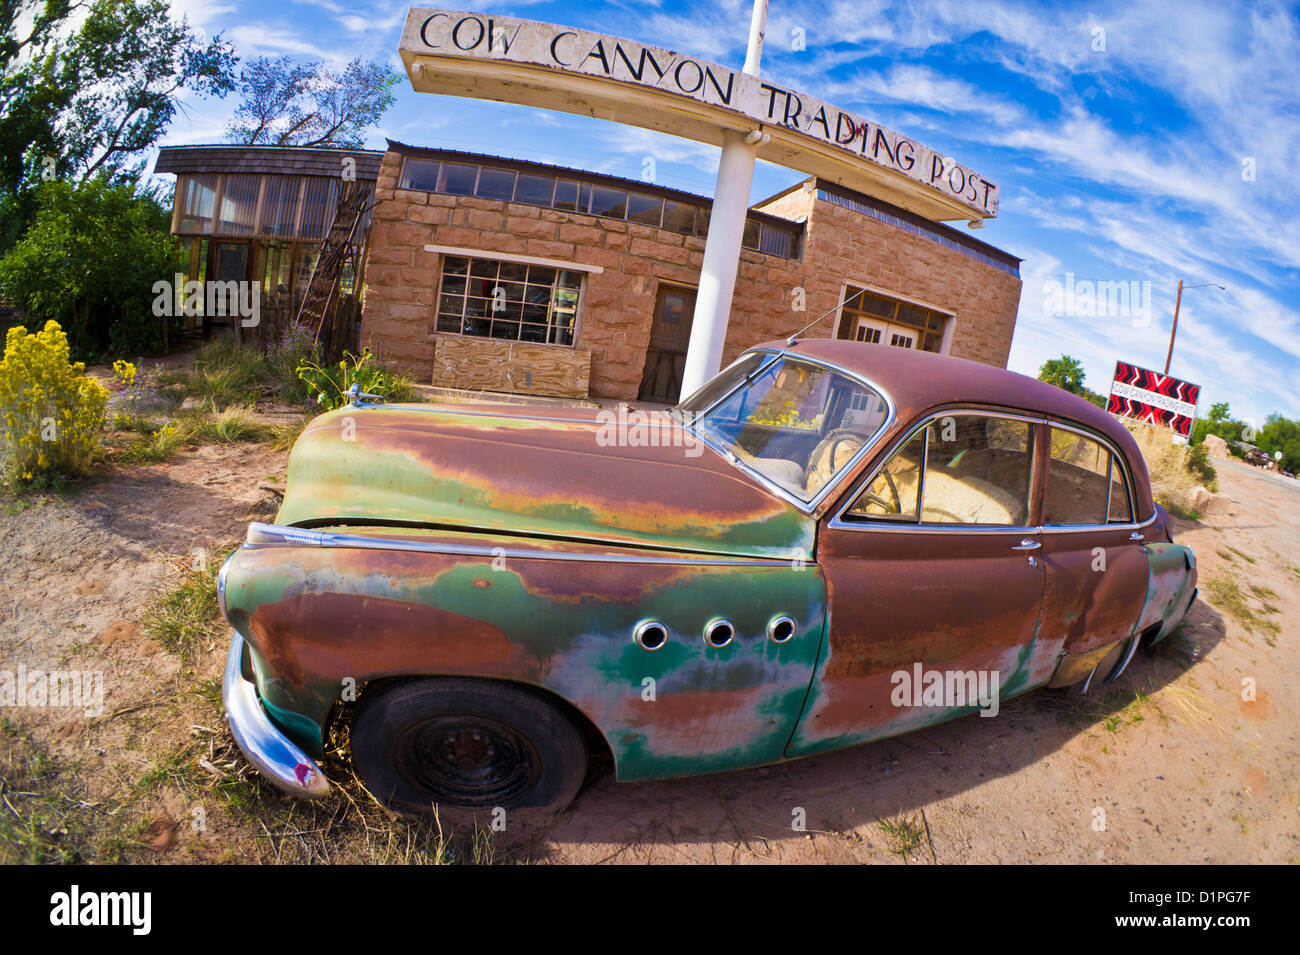 Vecchia ruggine Buick otto americano auto al di fuori del vecchio Cow Canyon Trading Post Bluff USA Utah Stati Uniti d'America Foto Stock